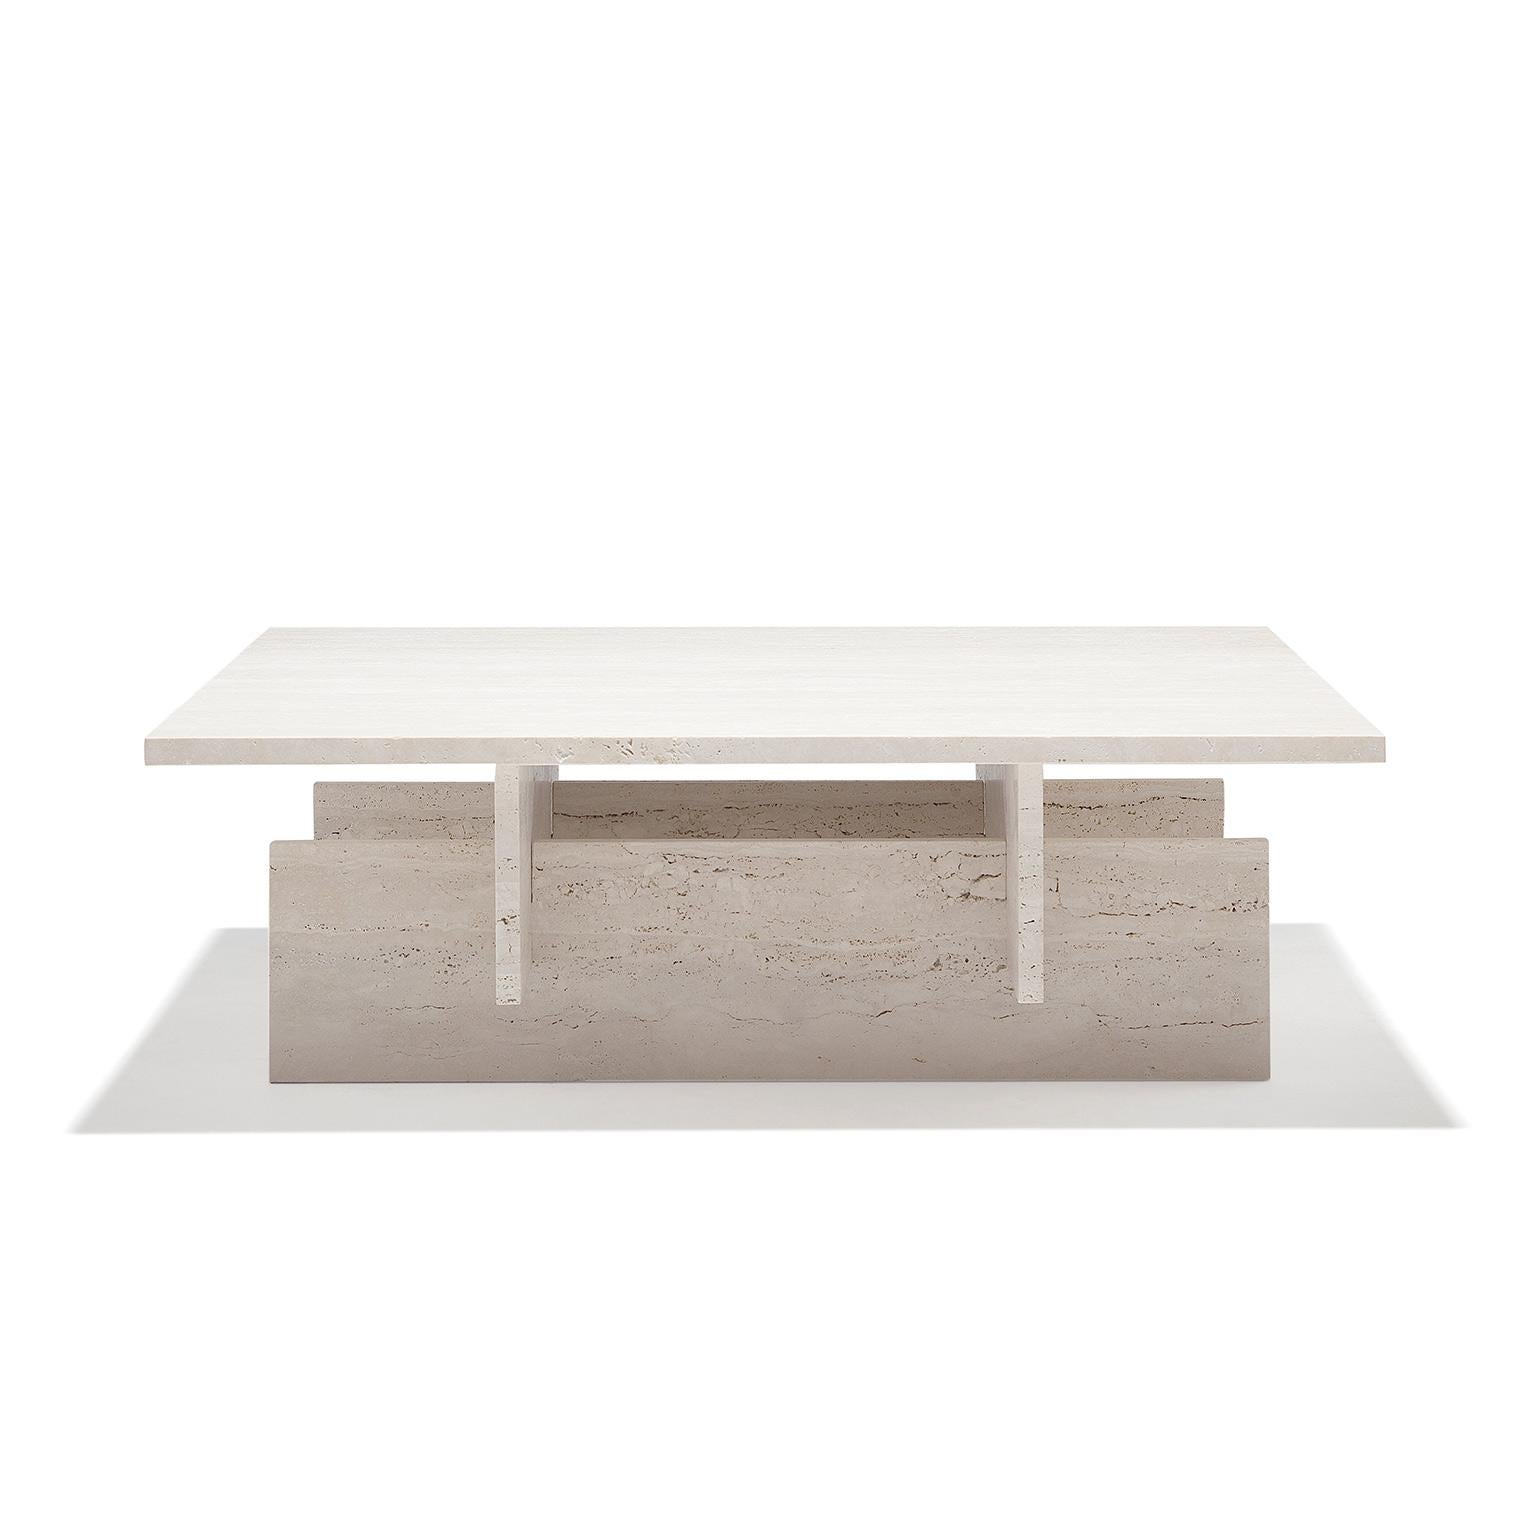 La Fit Table est une table basse de style minimaliste en marbre Travertin traité. Cette table basse est composée de cinq pièces de marbre, toutes assemblées de manière logique et harmonieuse.
Josep Vila Capdevila, designer en chef d'Aparentment,